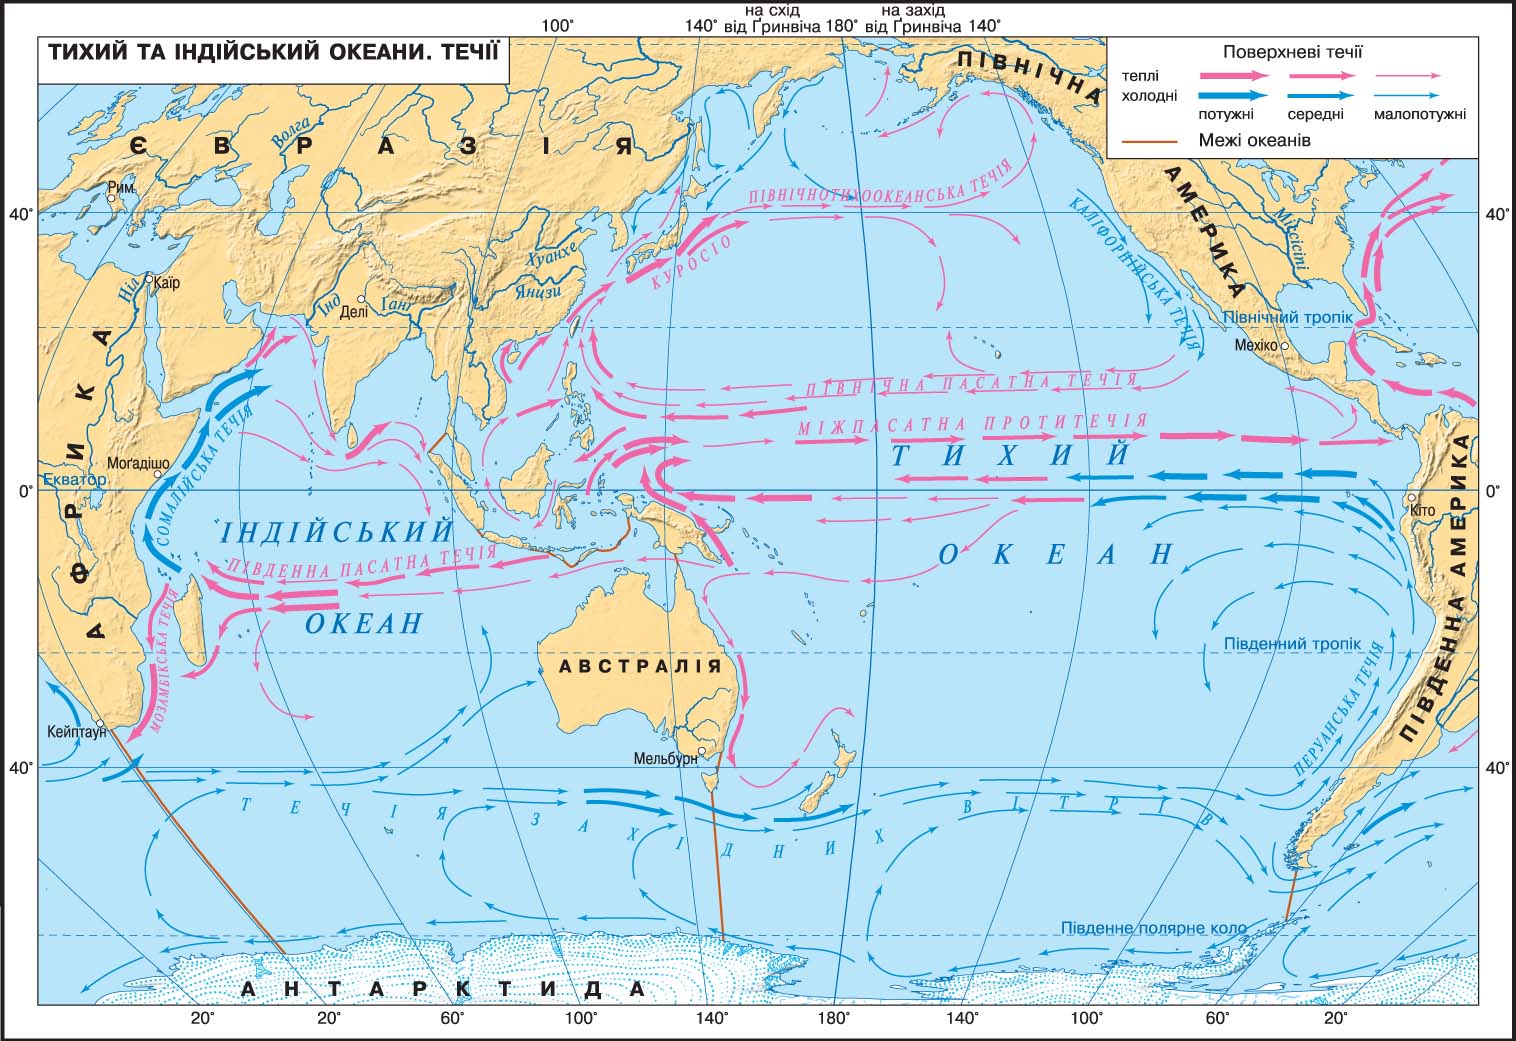 7 течений тихого океана. Карта течений Тихого океана. Тихий океан карта 7 класс атлас холодные и теплые течения. Течения Тихого океана 7 класс. Течения Тихого океана теплые и холодные на карте 7.